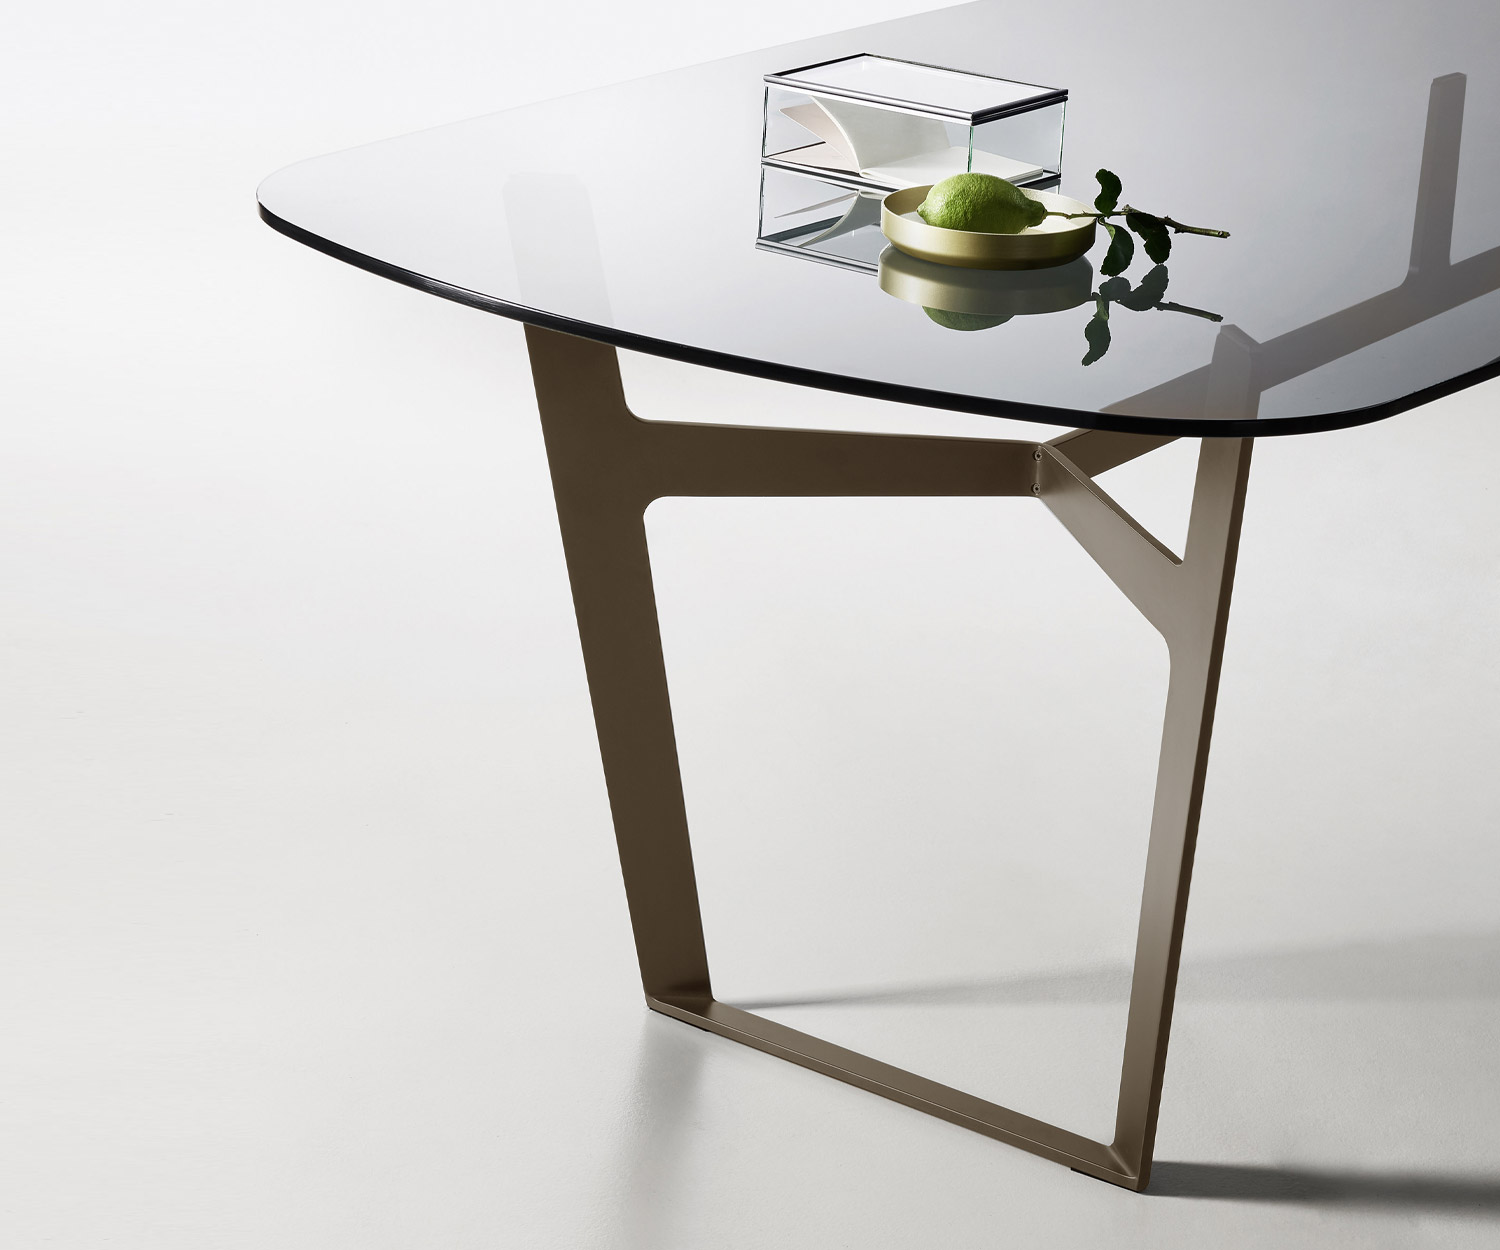 En détail Plateau de table en verre Piétement métallique Obi Design Table de salle à manger Livitalia